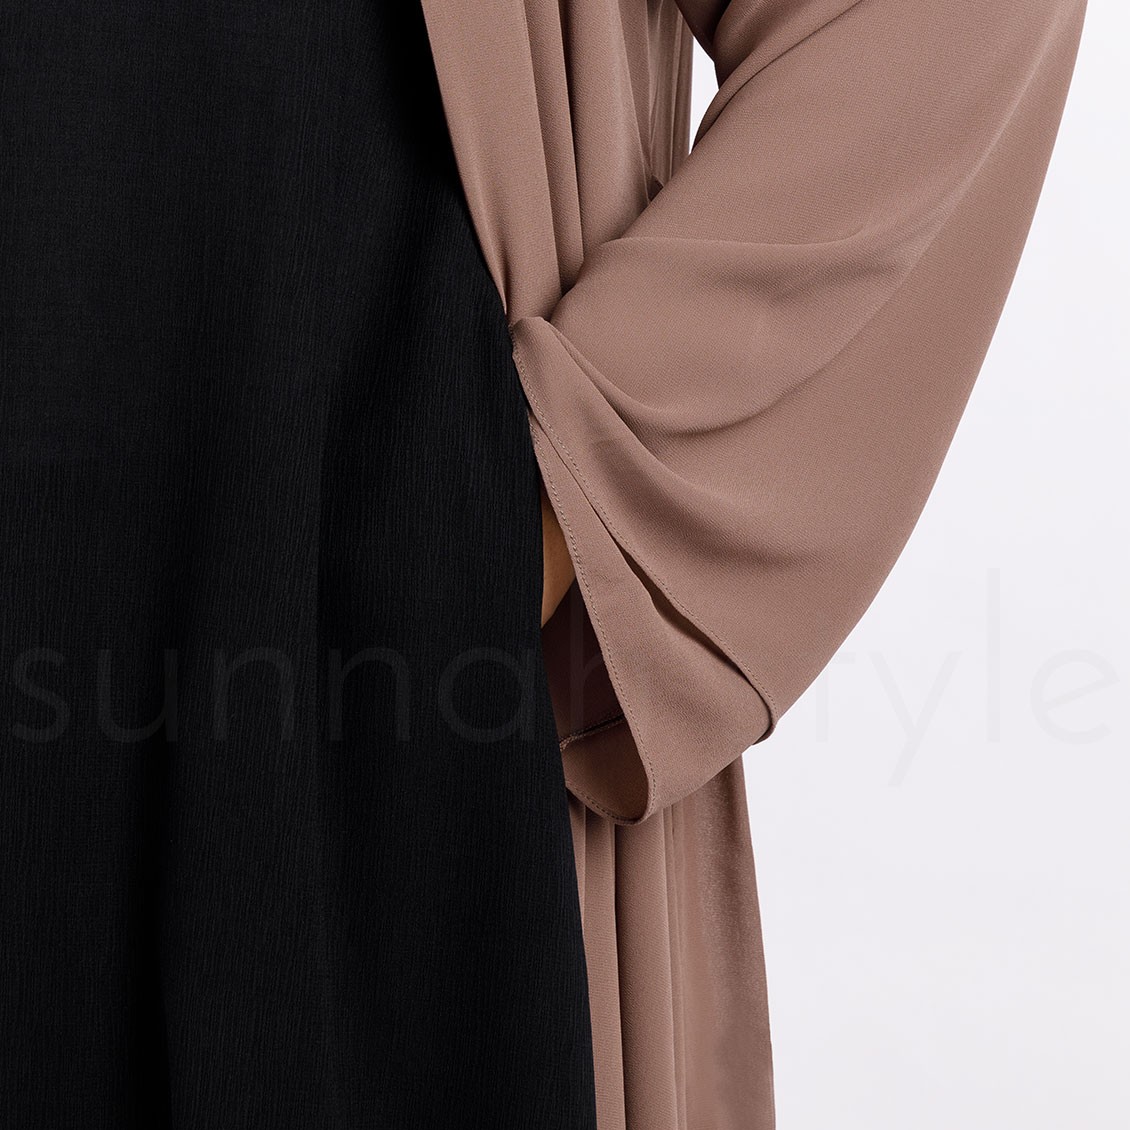 Sunnah Style Brushed Sleeveless Abaya Black